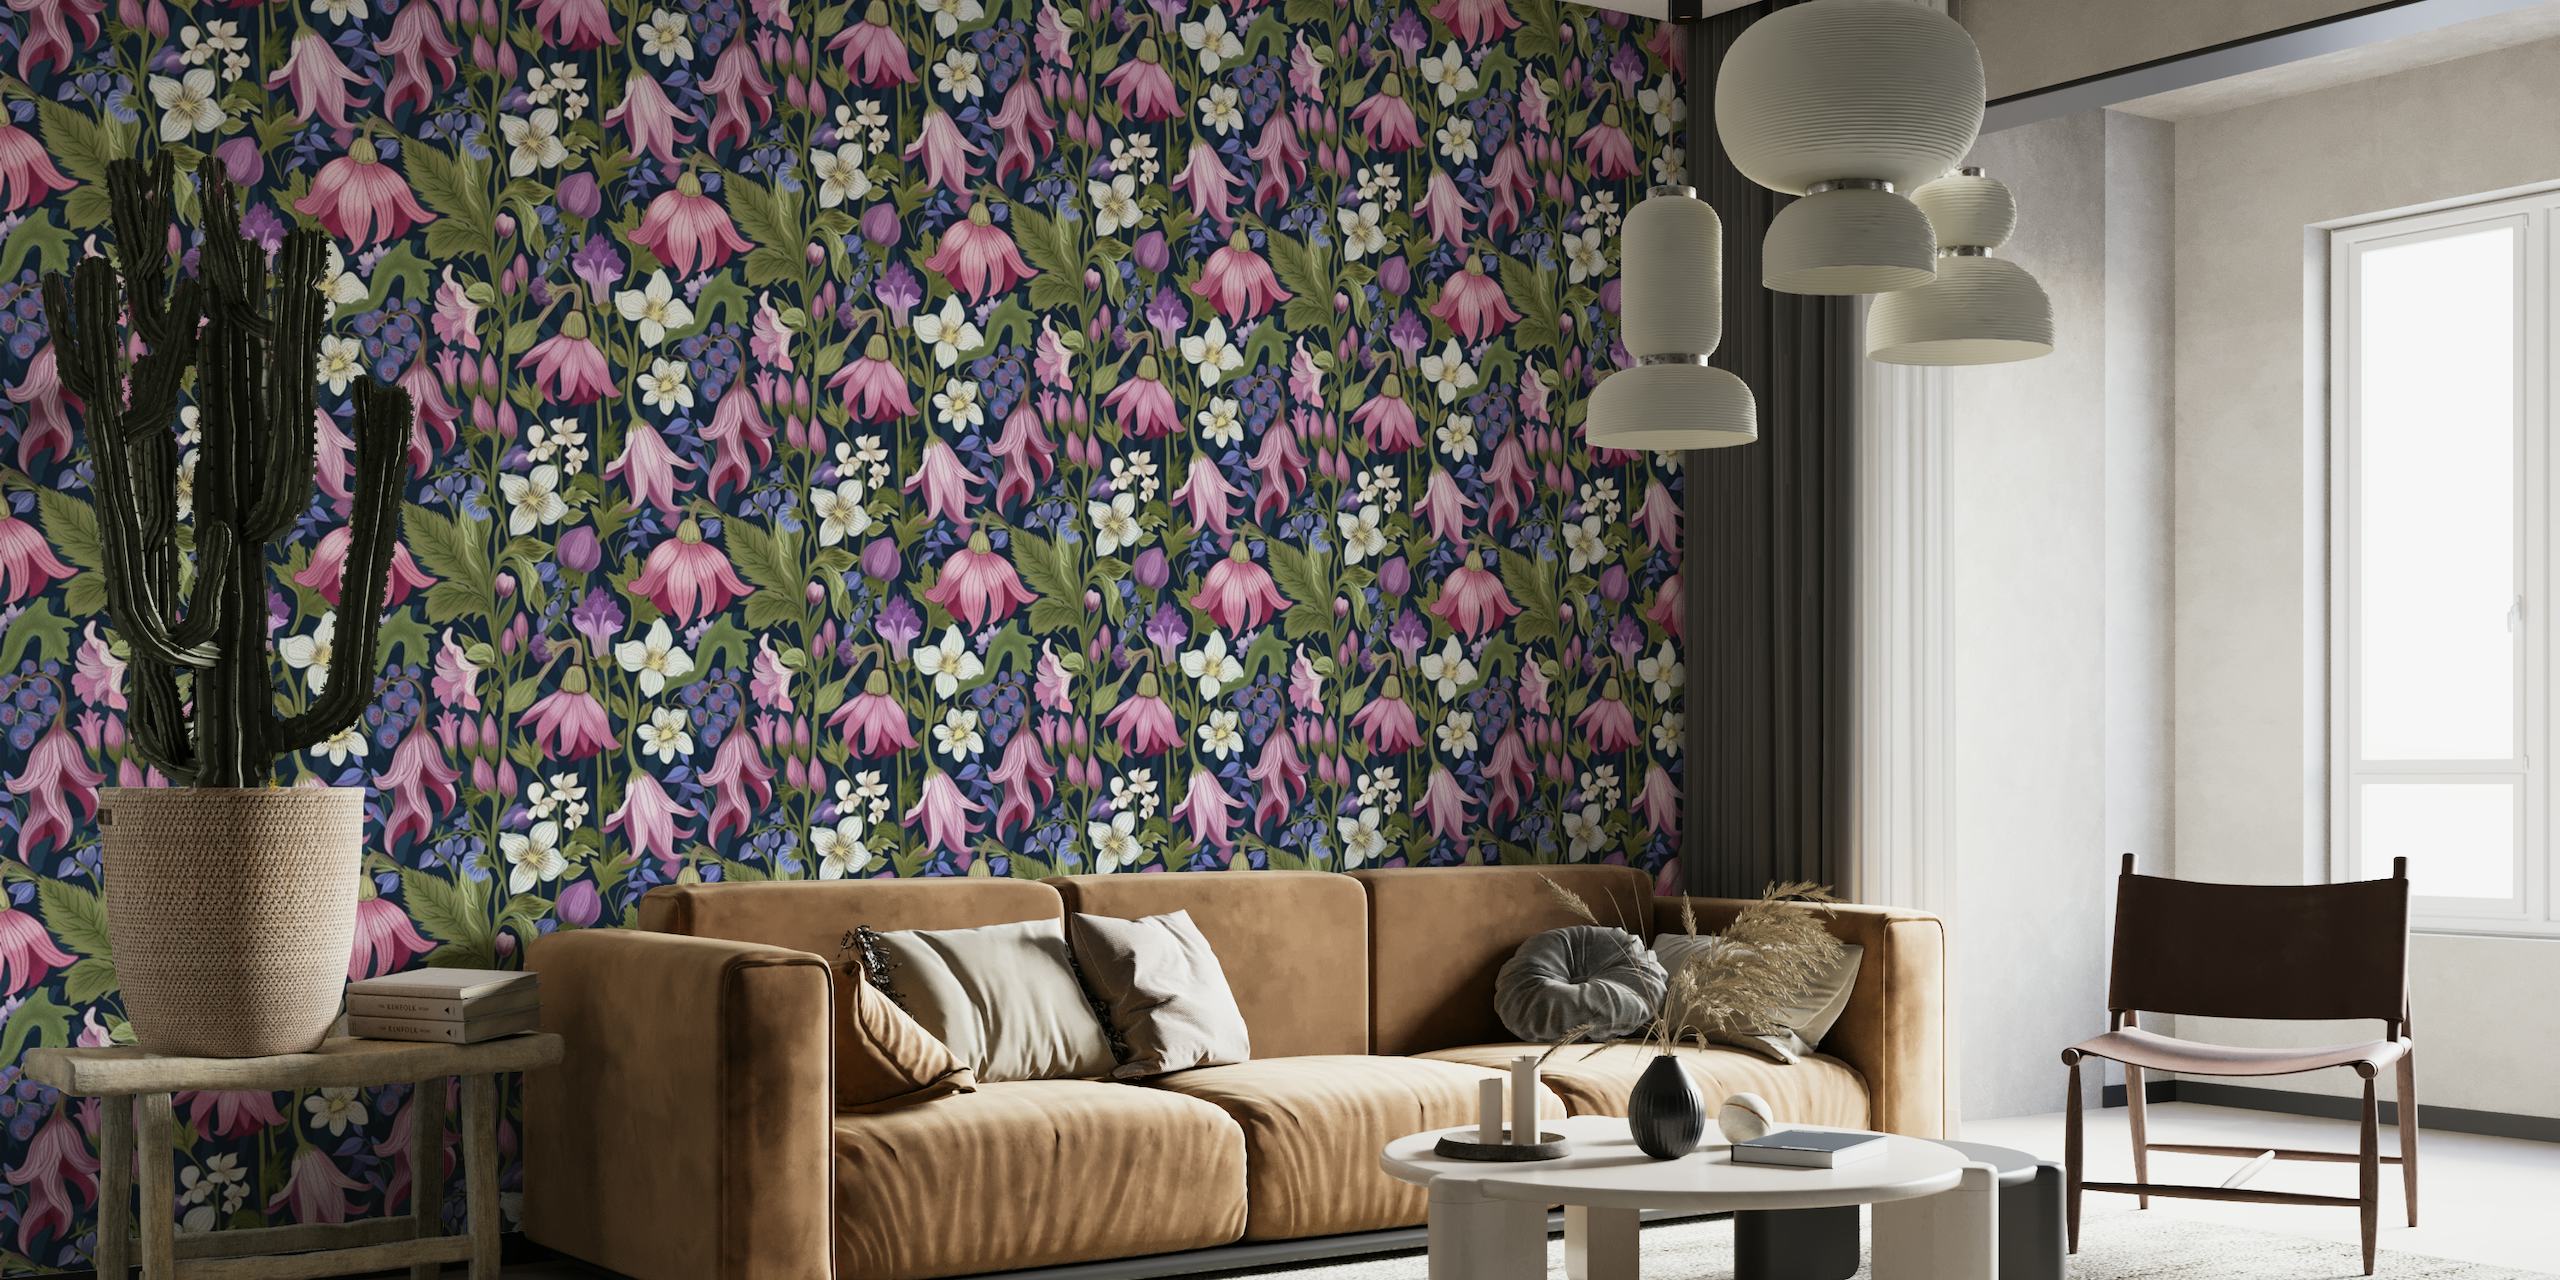 Elegantna botanička zidna slika s bujnim cvijećem u ružičastoj, ljubičastoj i bijeloj boji na tamno plavoj pozadini